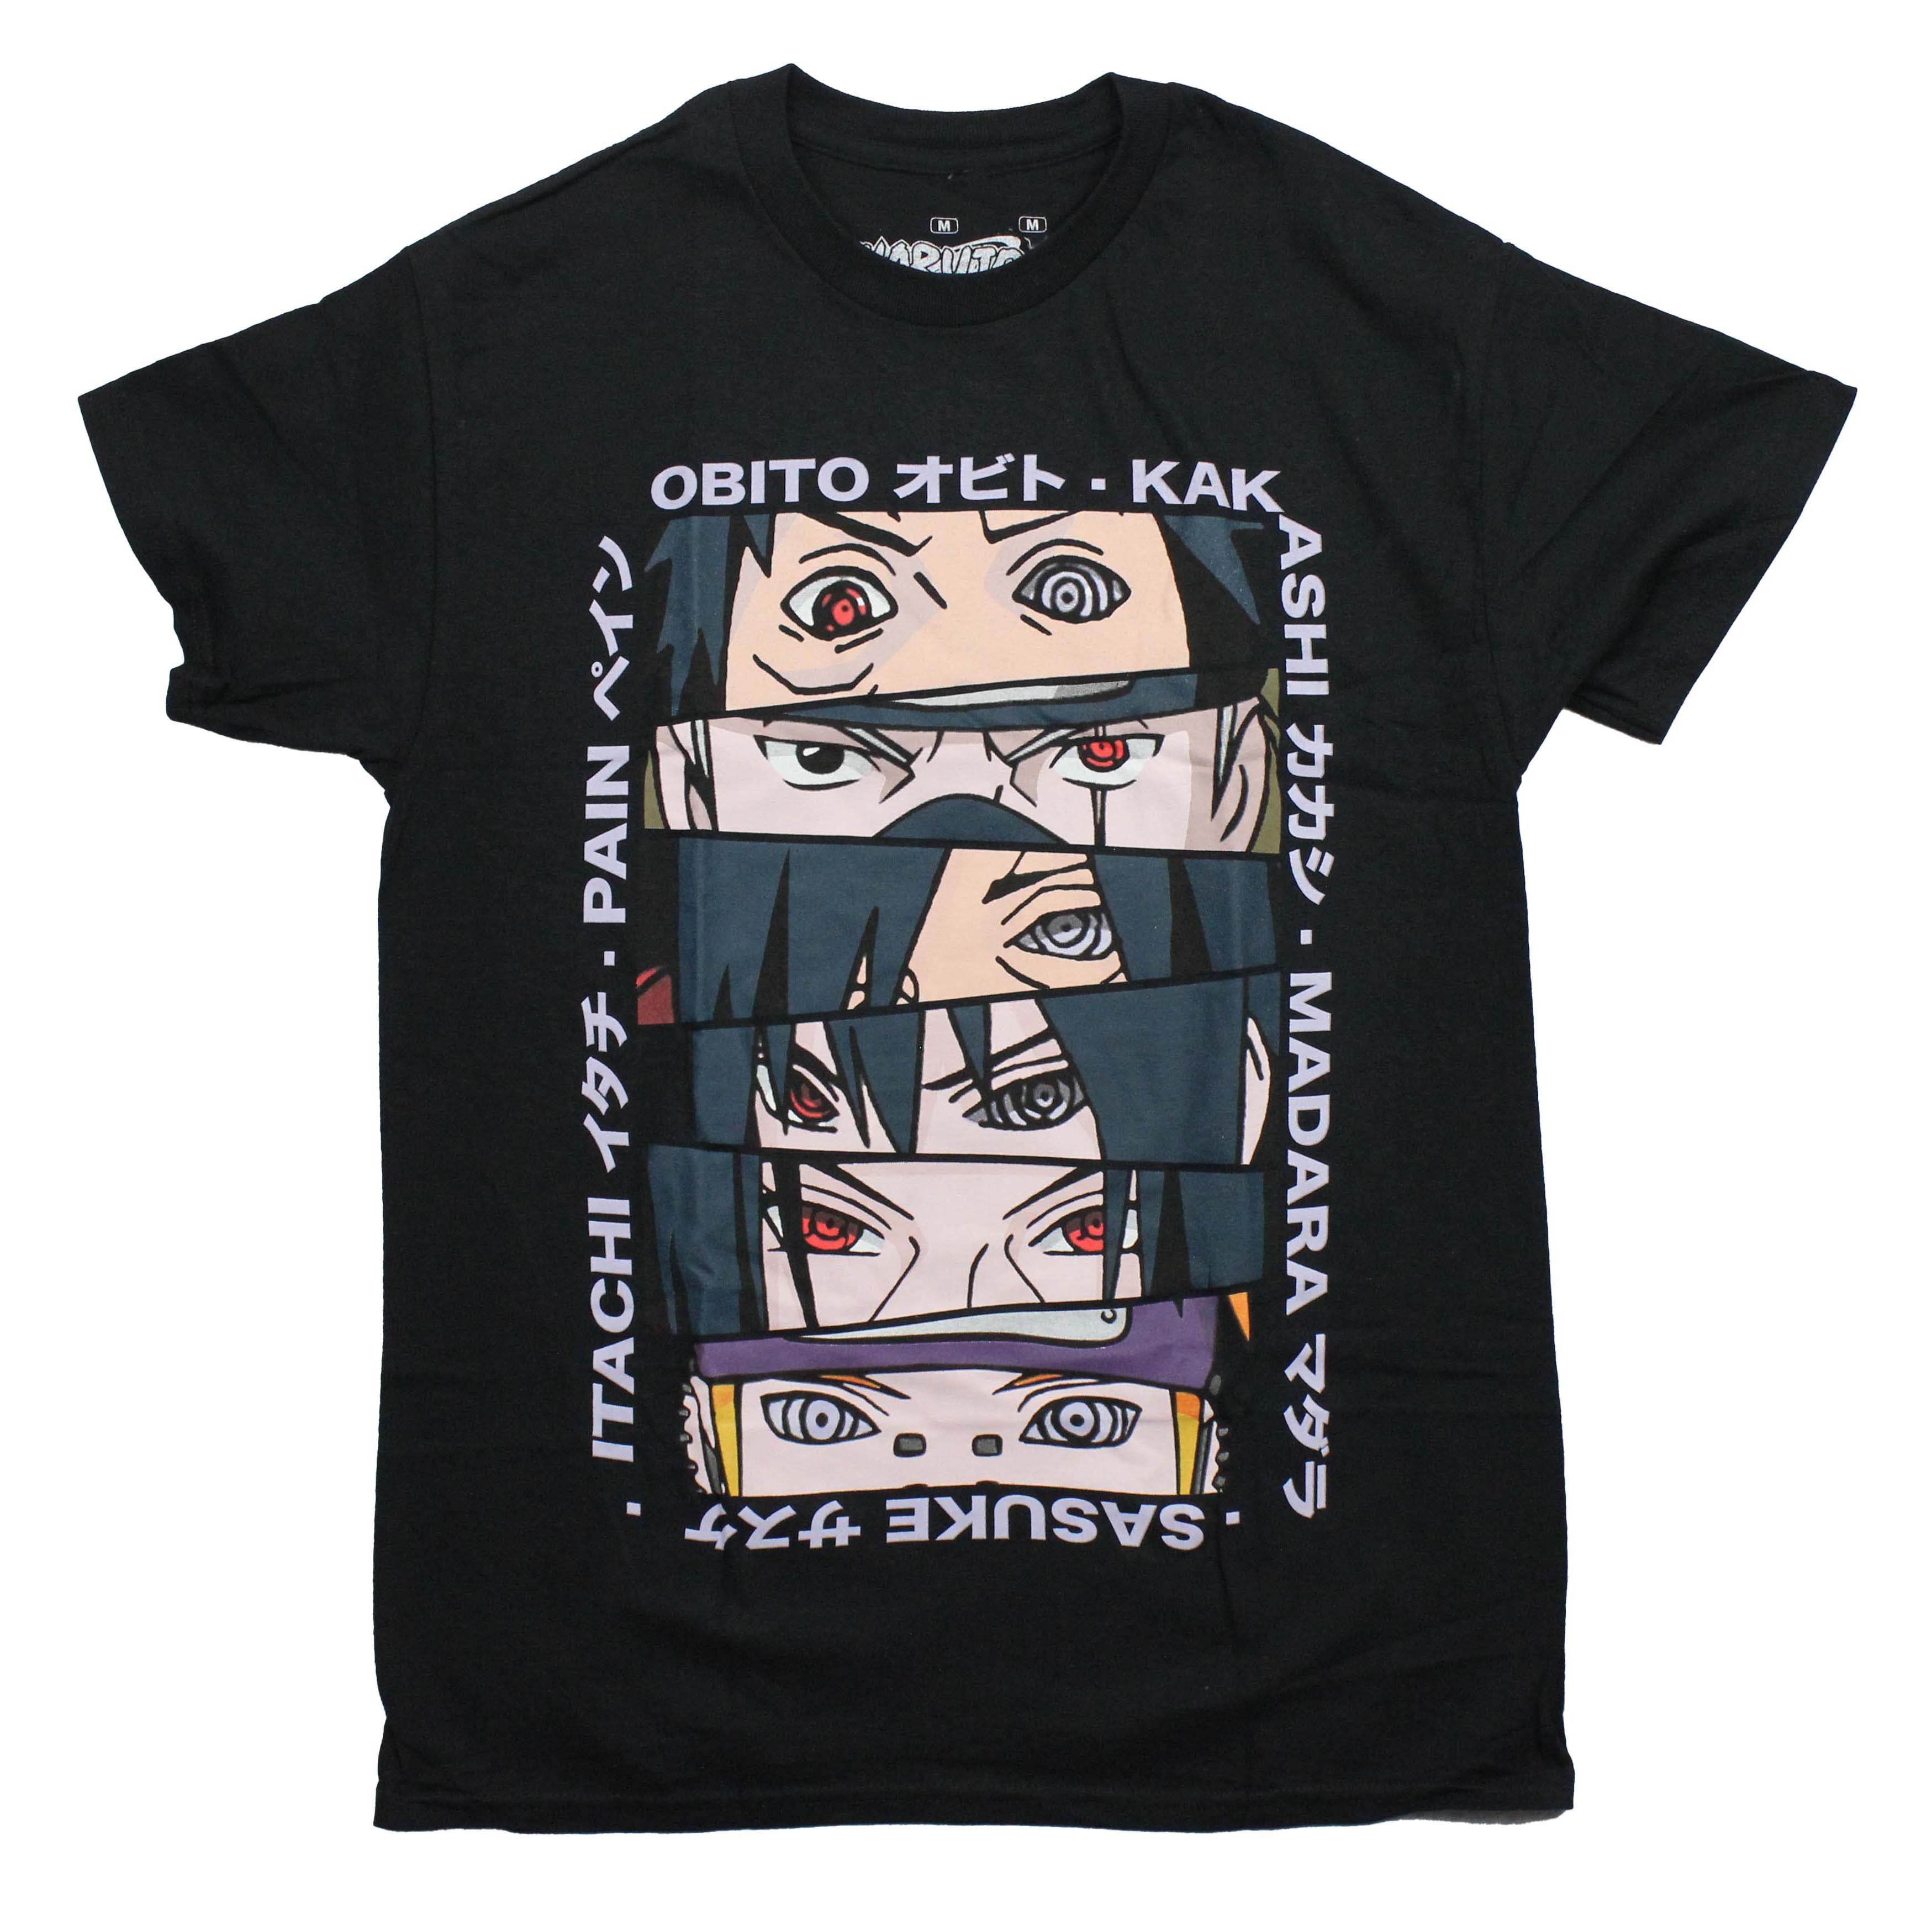 Naruto Shippuden Mens T-Shirt - Eye Images of Uchiha Clan Names in Kanji